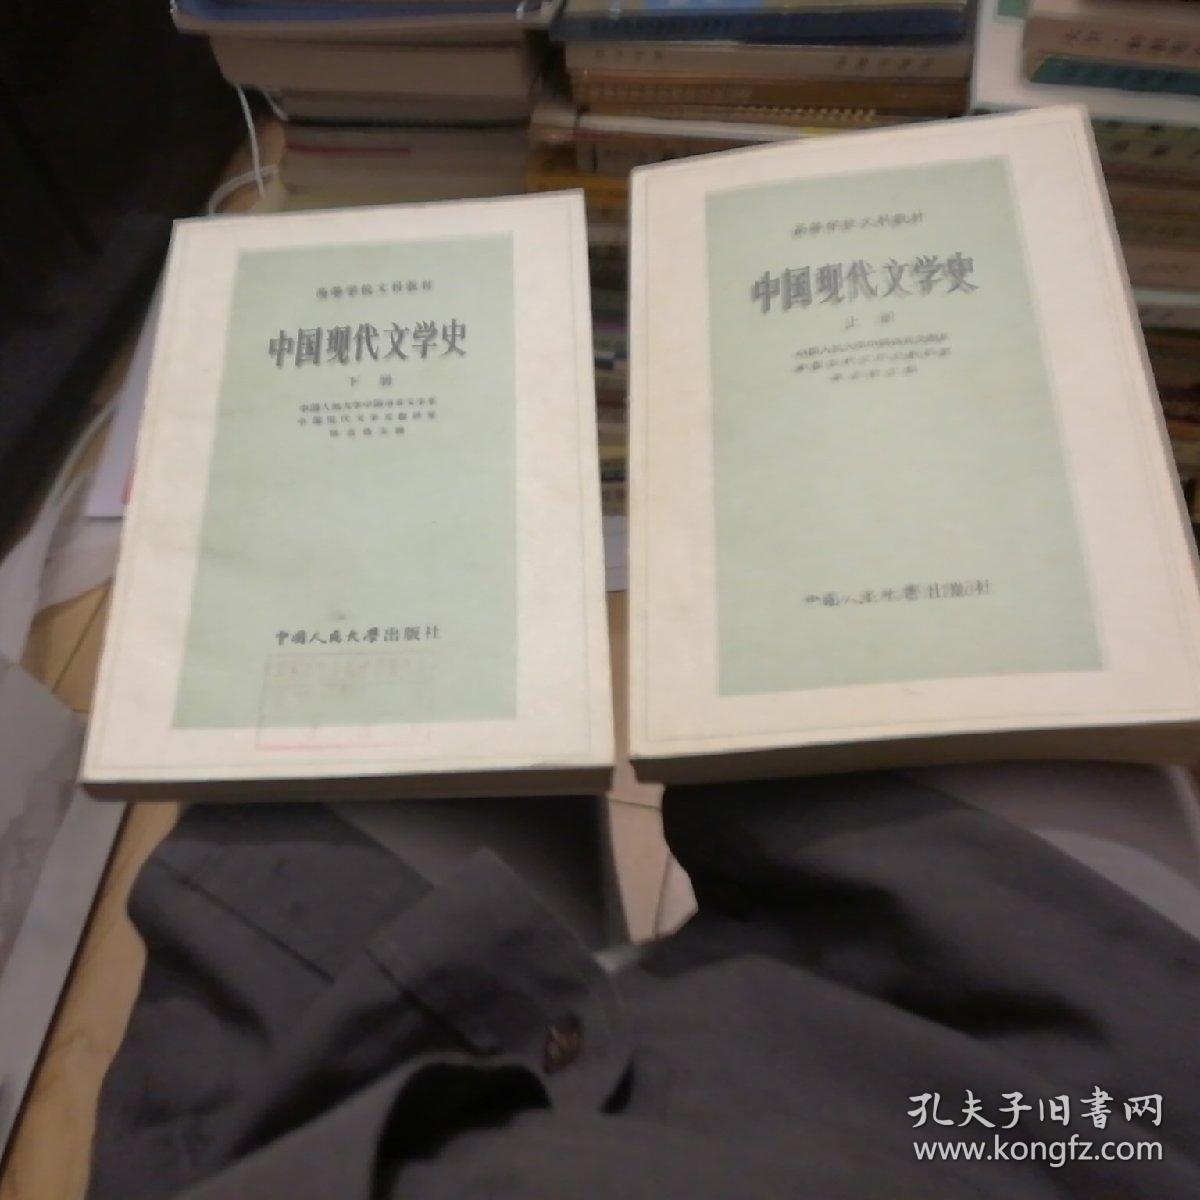 中国现代文学史（上下两册全）